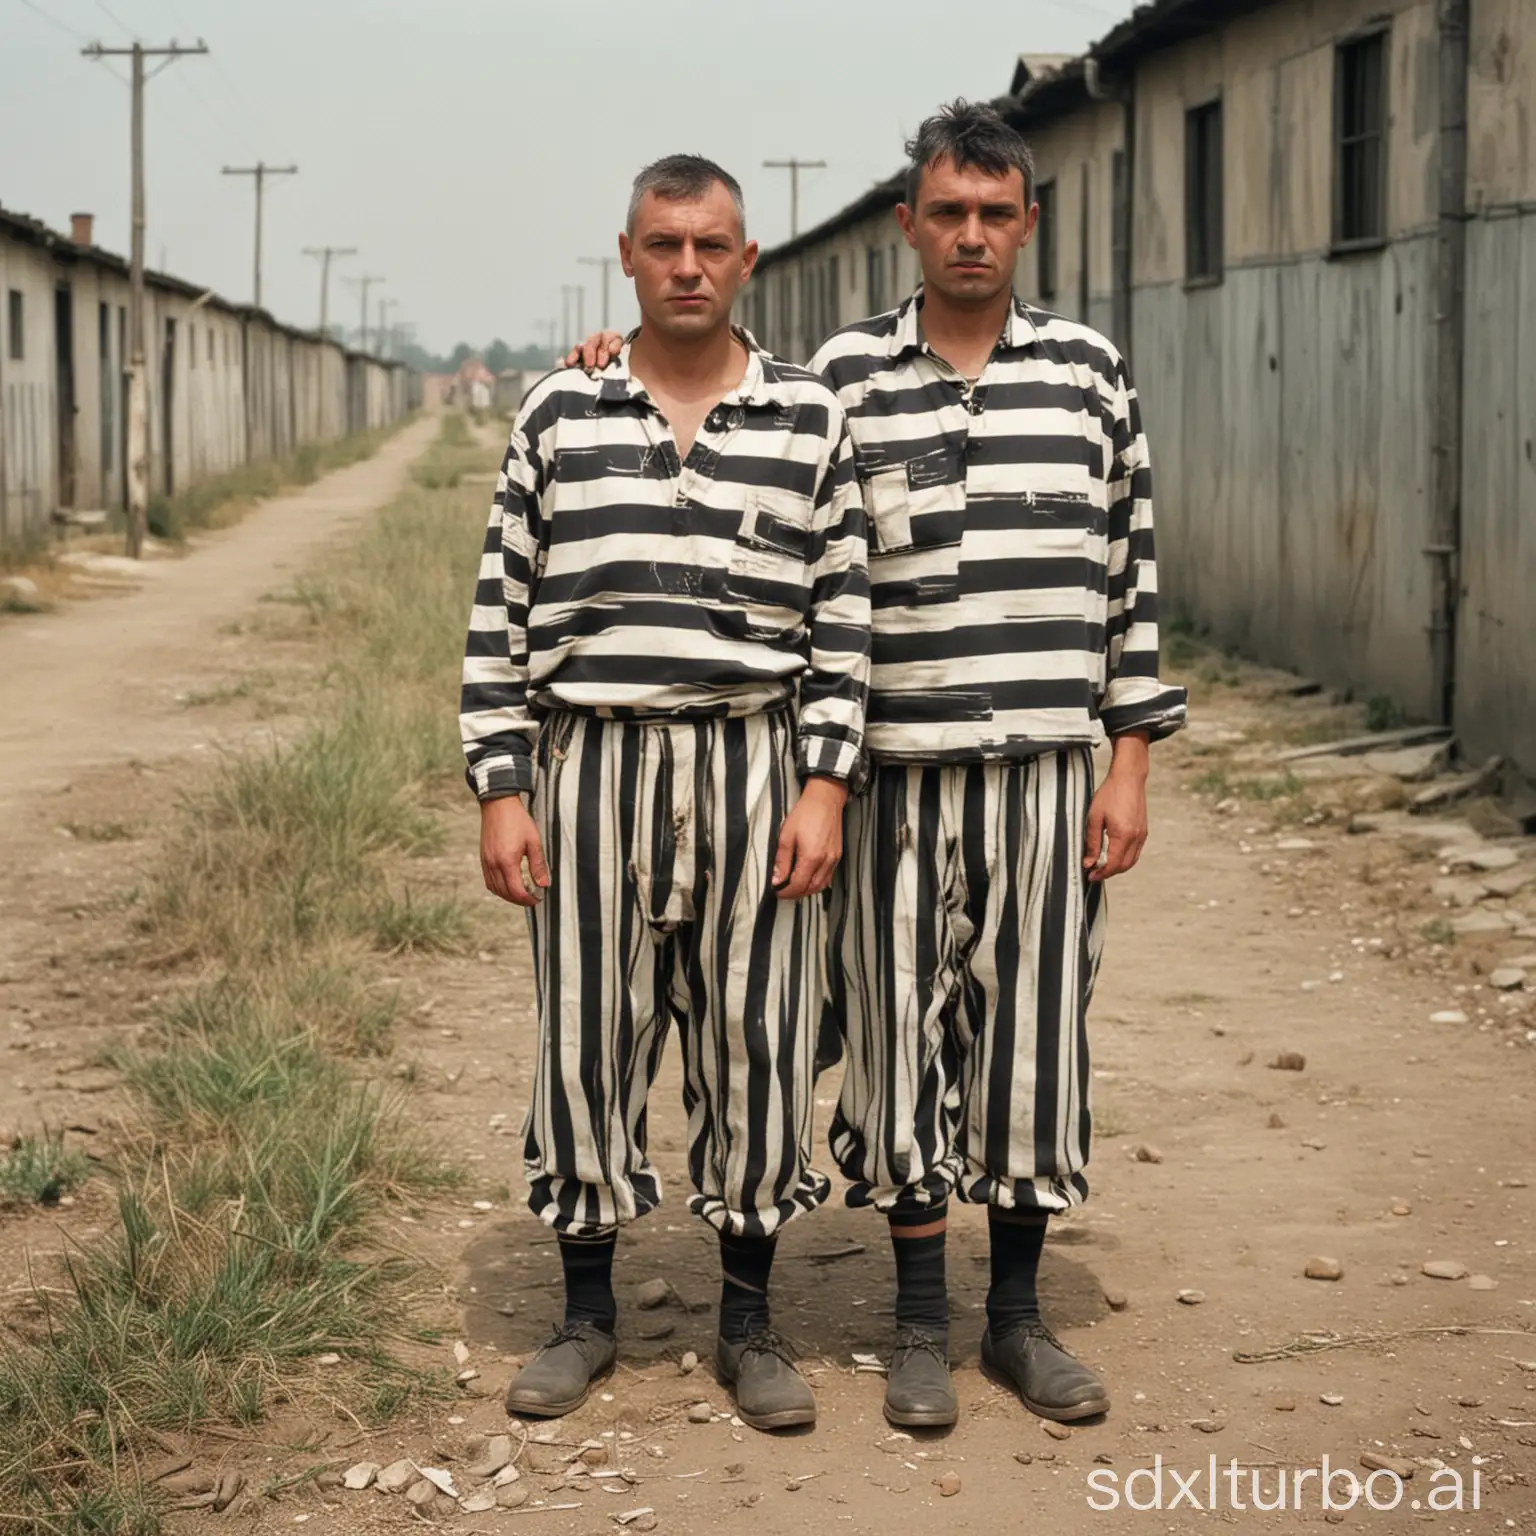 Dos prisioneros de campos de concentración con sus ropajes a rallas, mirando de frente
